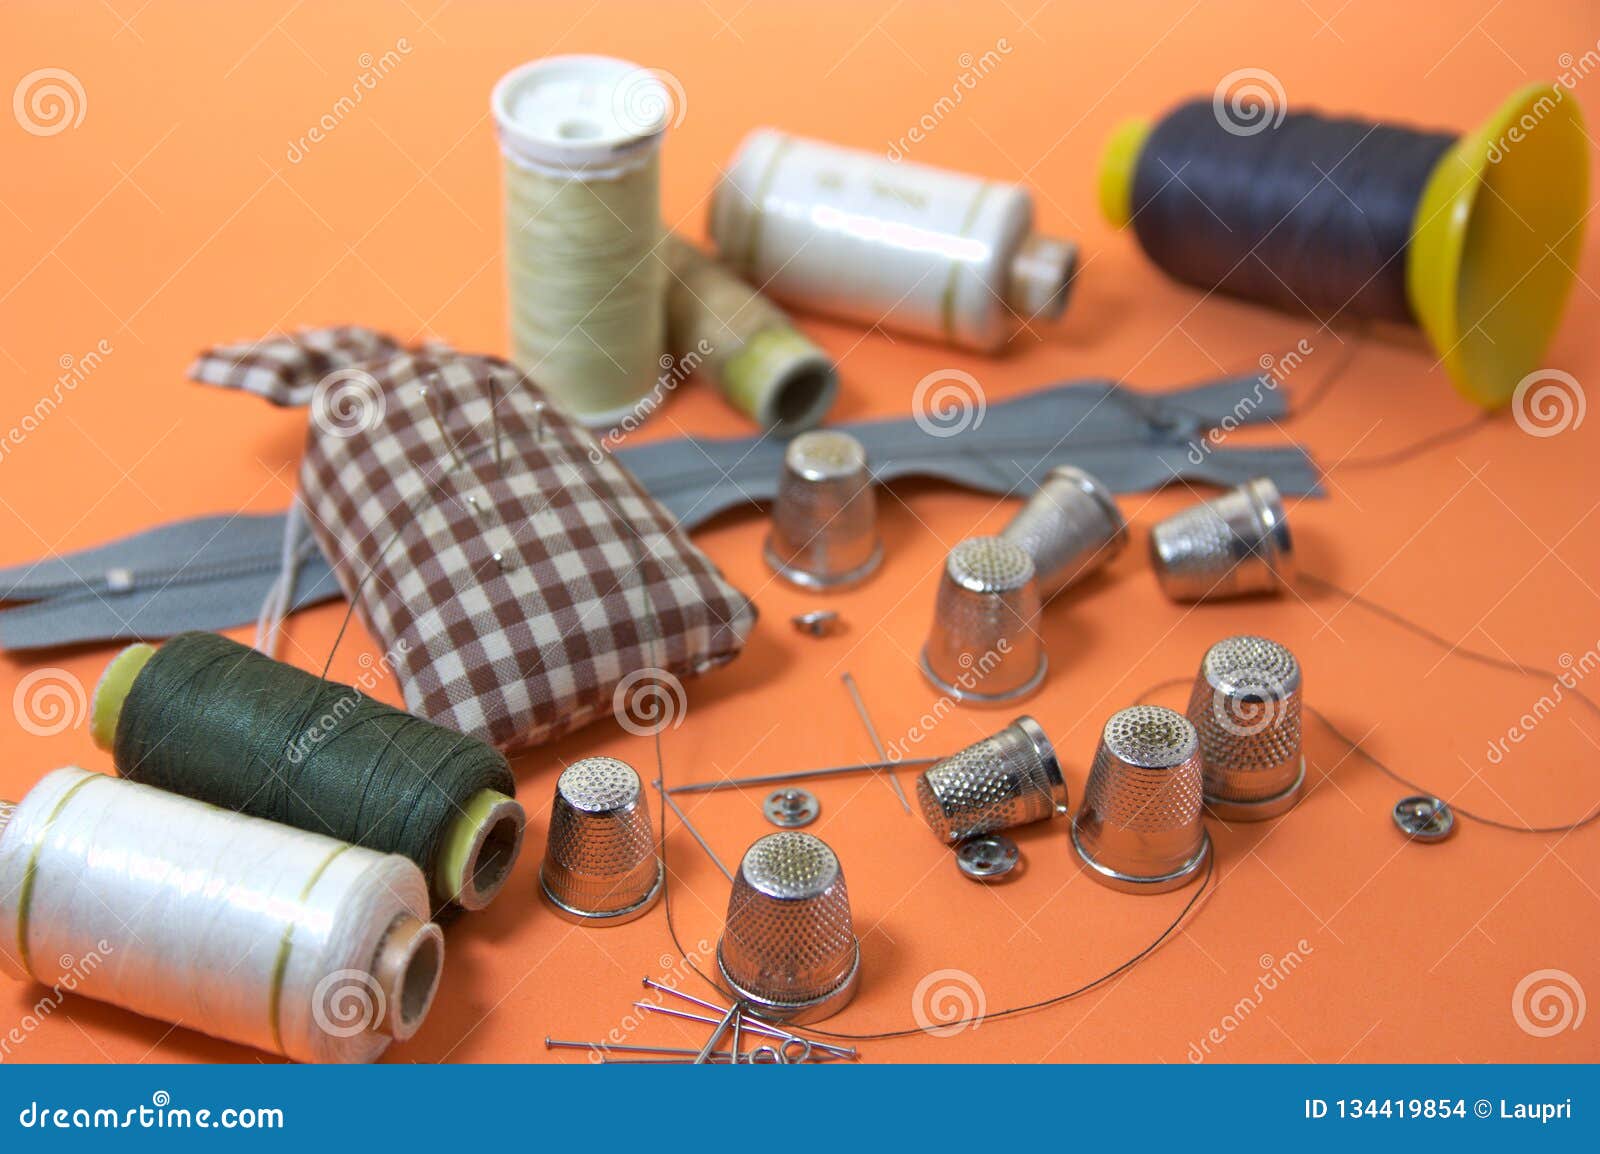 Cosas útiles para coser como dedales, agujas o hilo. Fije de las cosas útiles para casero o profesional cosiendo, por ejemplo agujas, el hilo o dedales